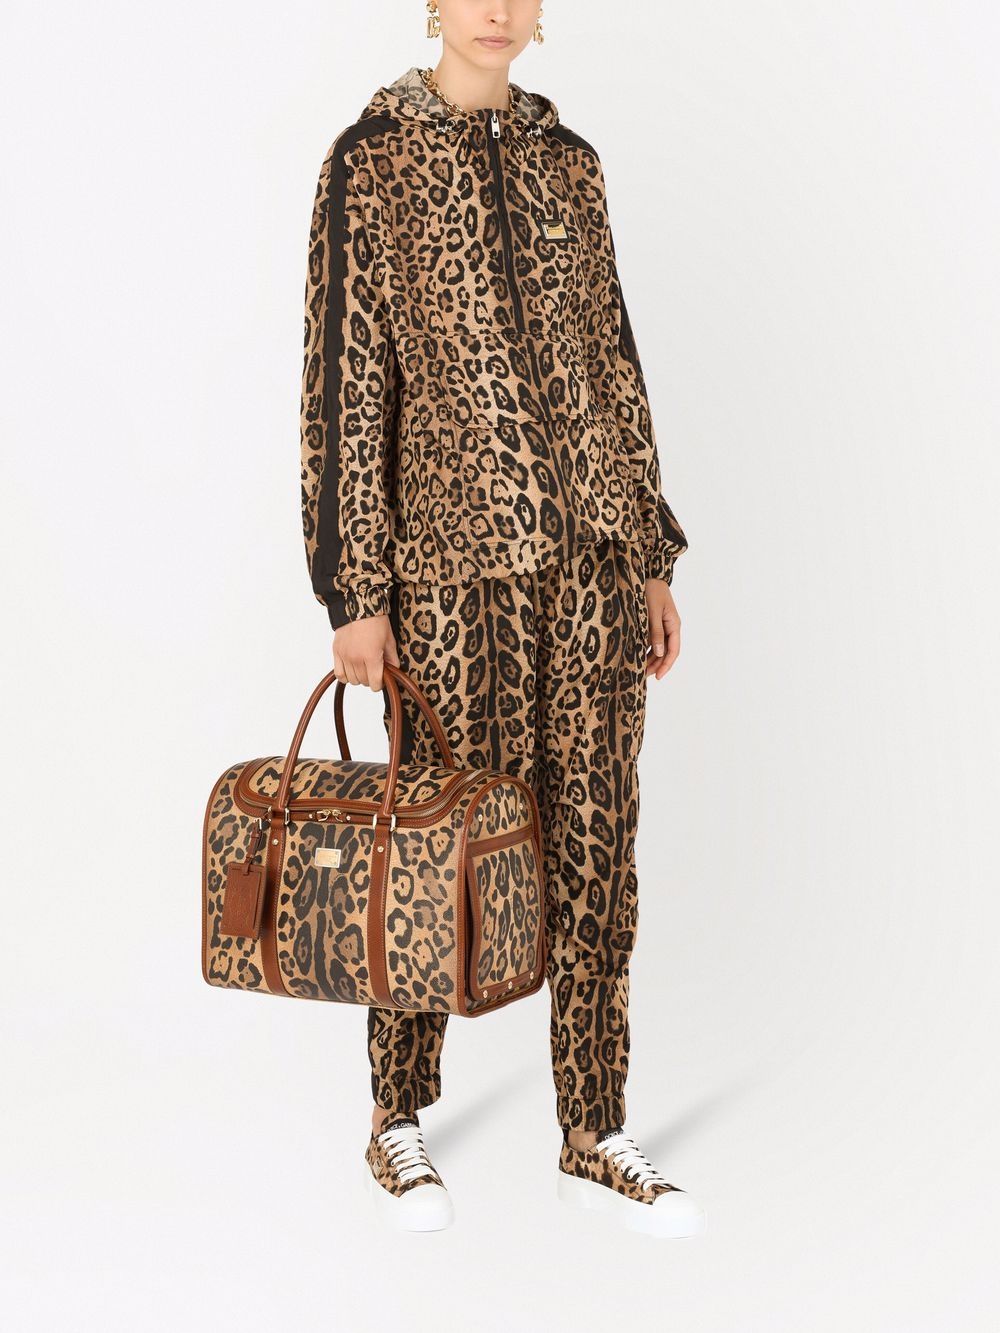 сумка с леопардовым принтом Dolce&Gabbana 17054537636363633263